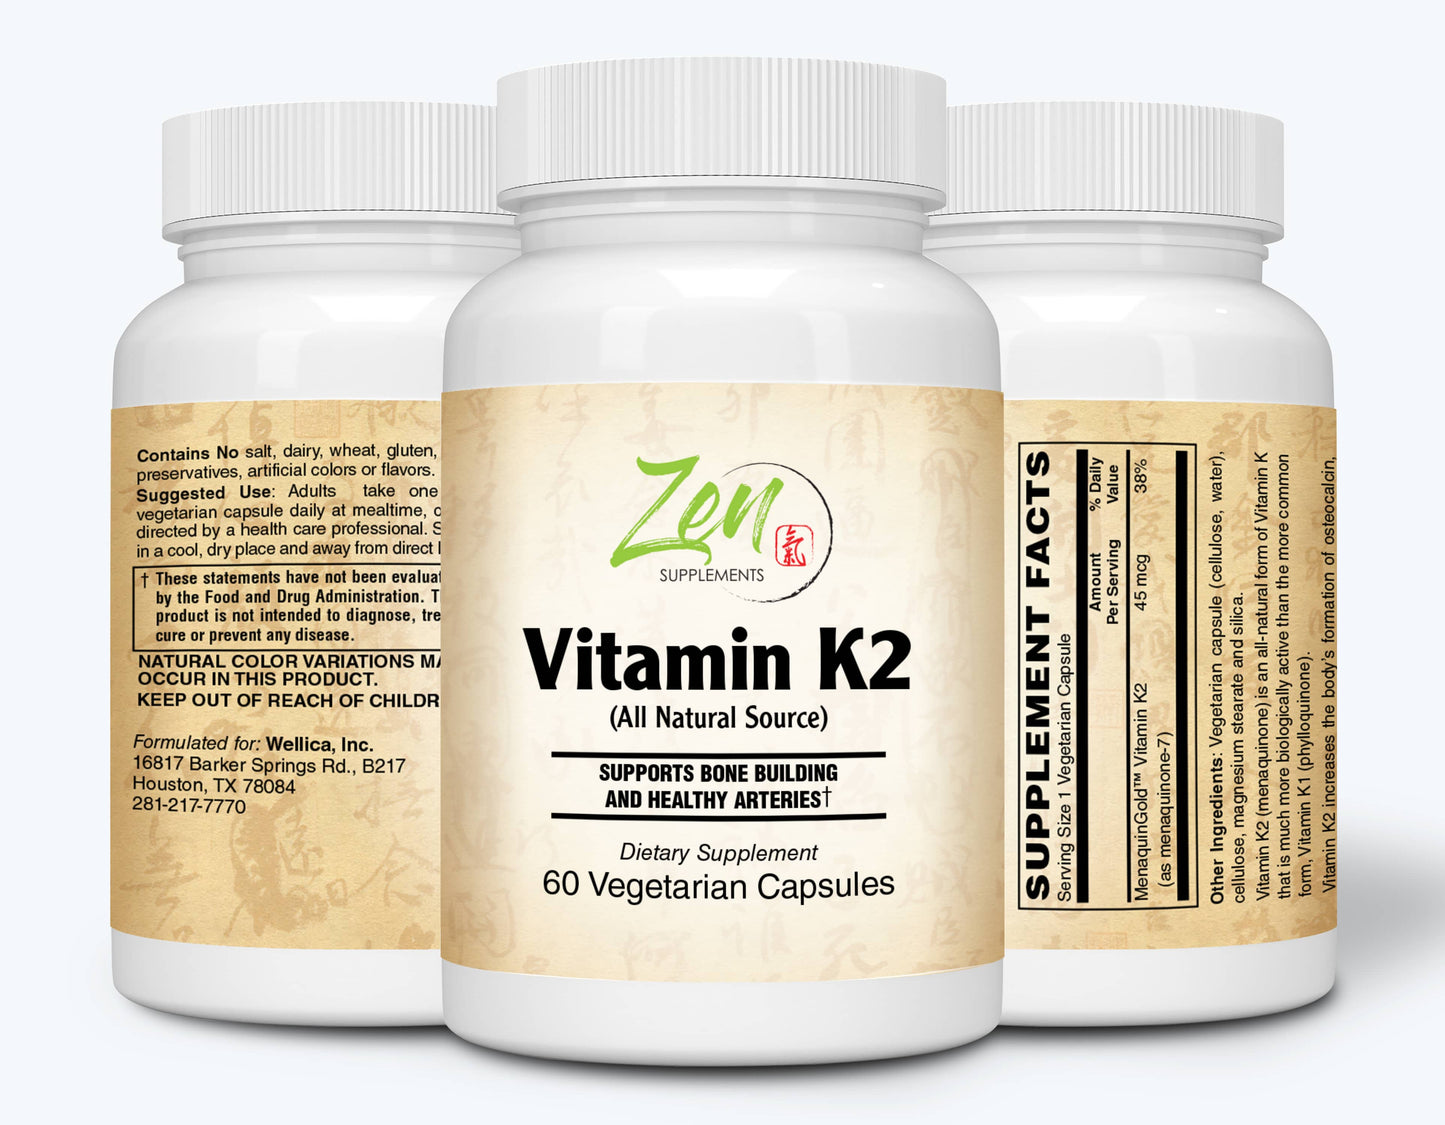 Vitamin K2 45mcg - With MenaquinGold® Natural Vitamin MK-7 - 60 Vegcaps